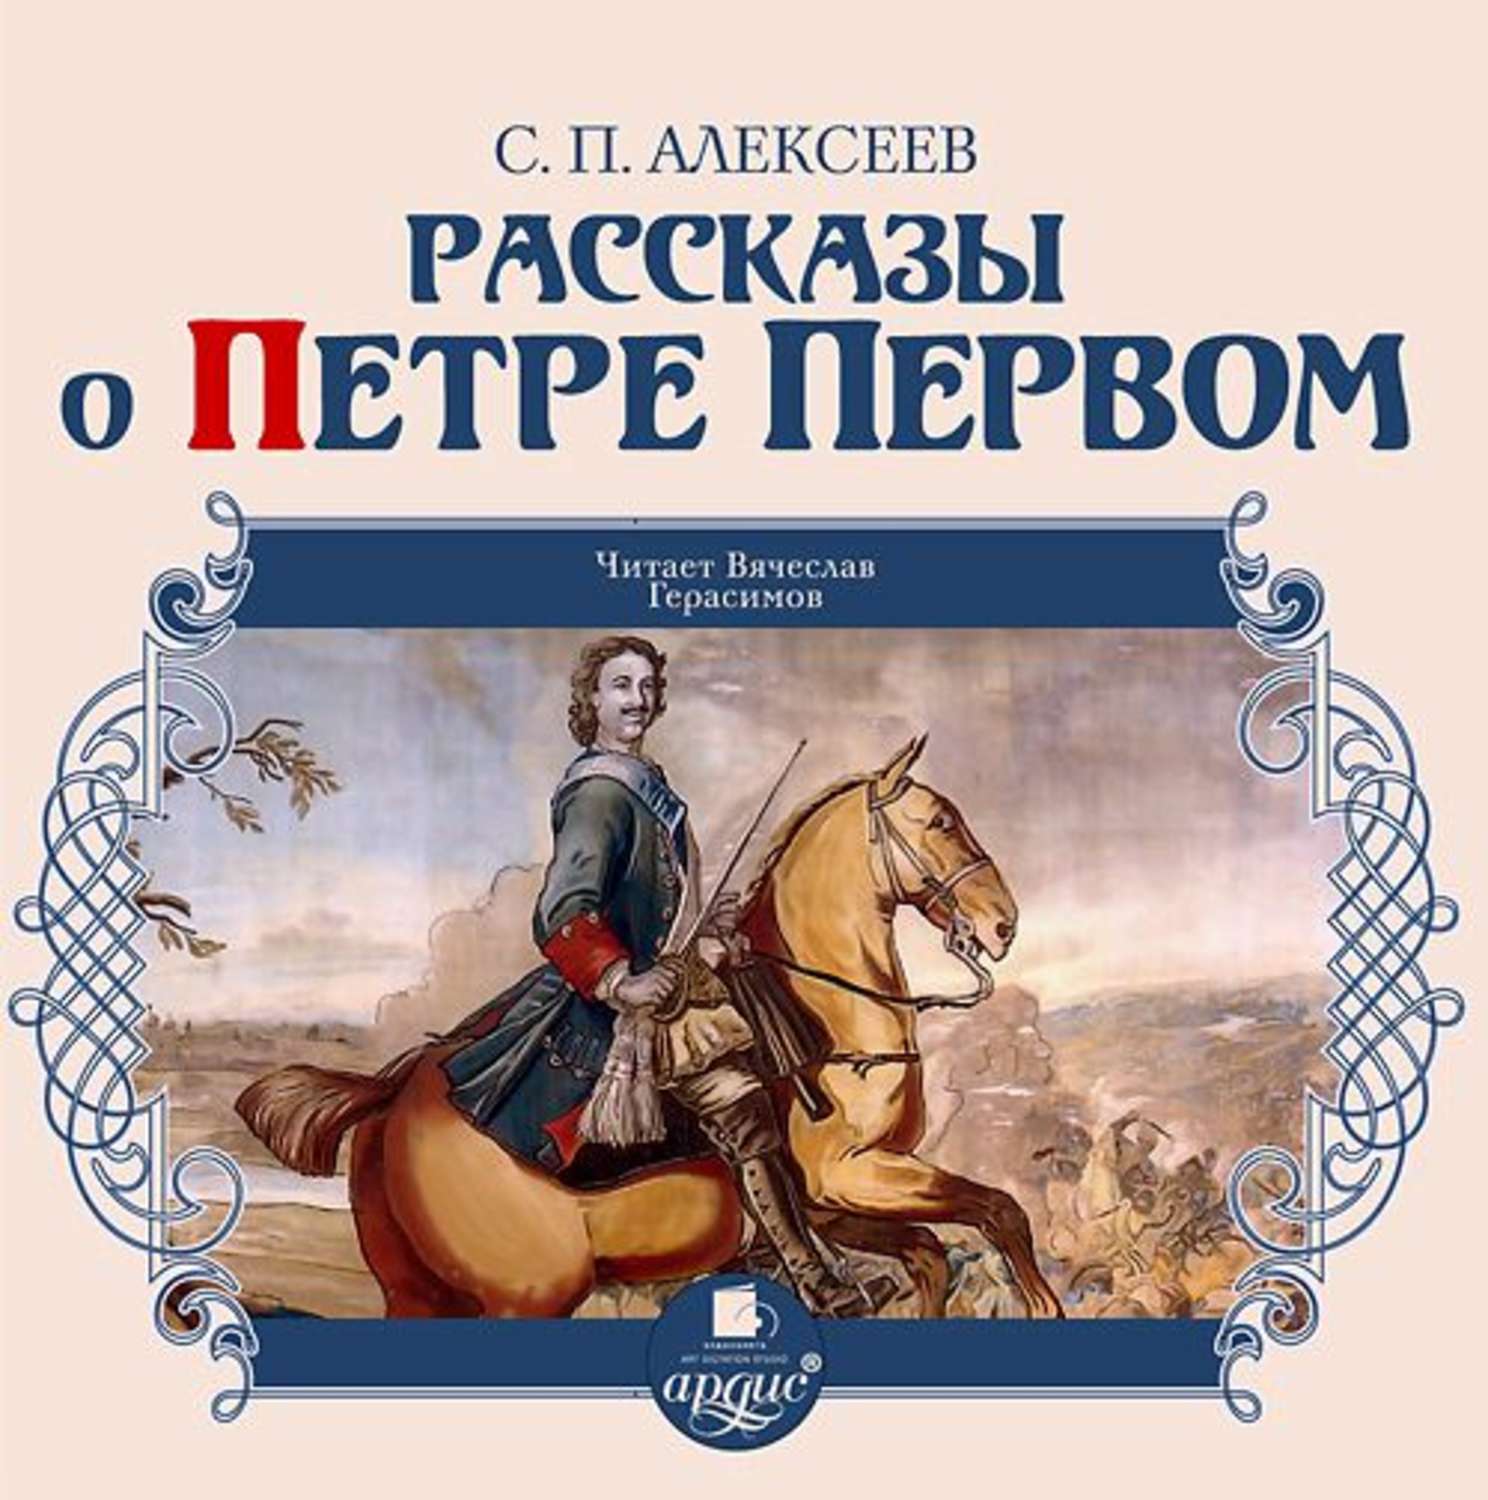 Аудио произведения слушать. Книги о Петре первом Алексеева для детей.